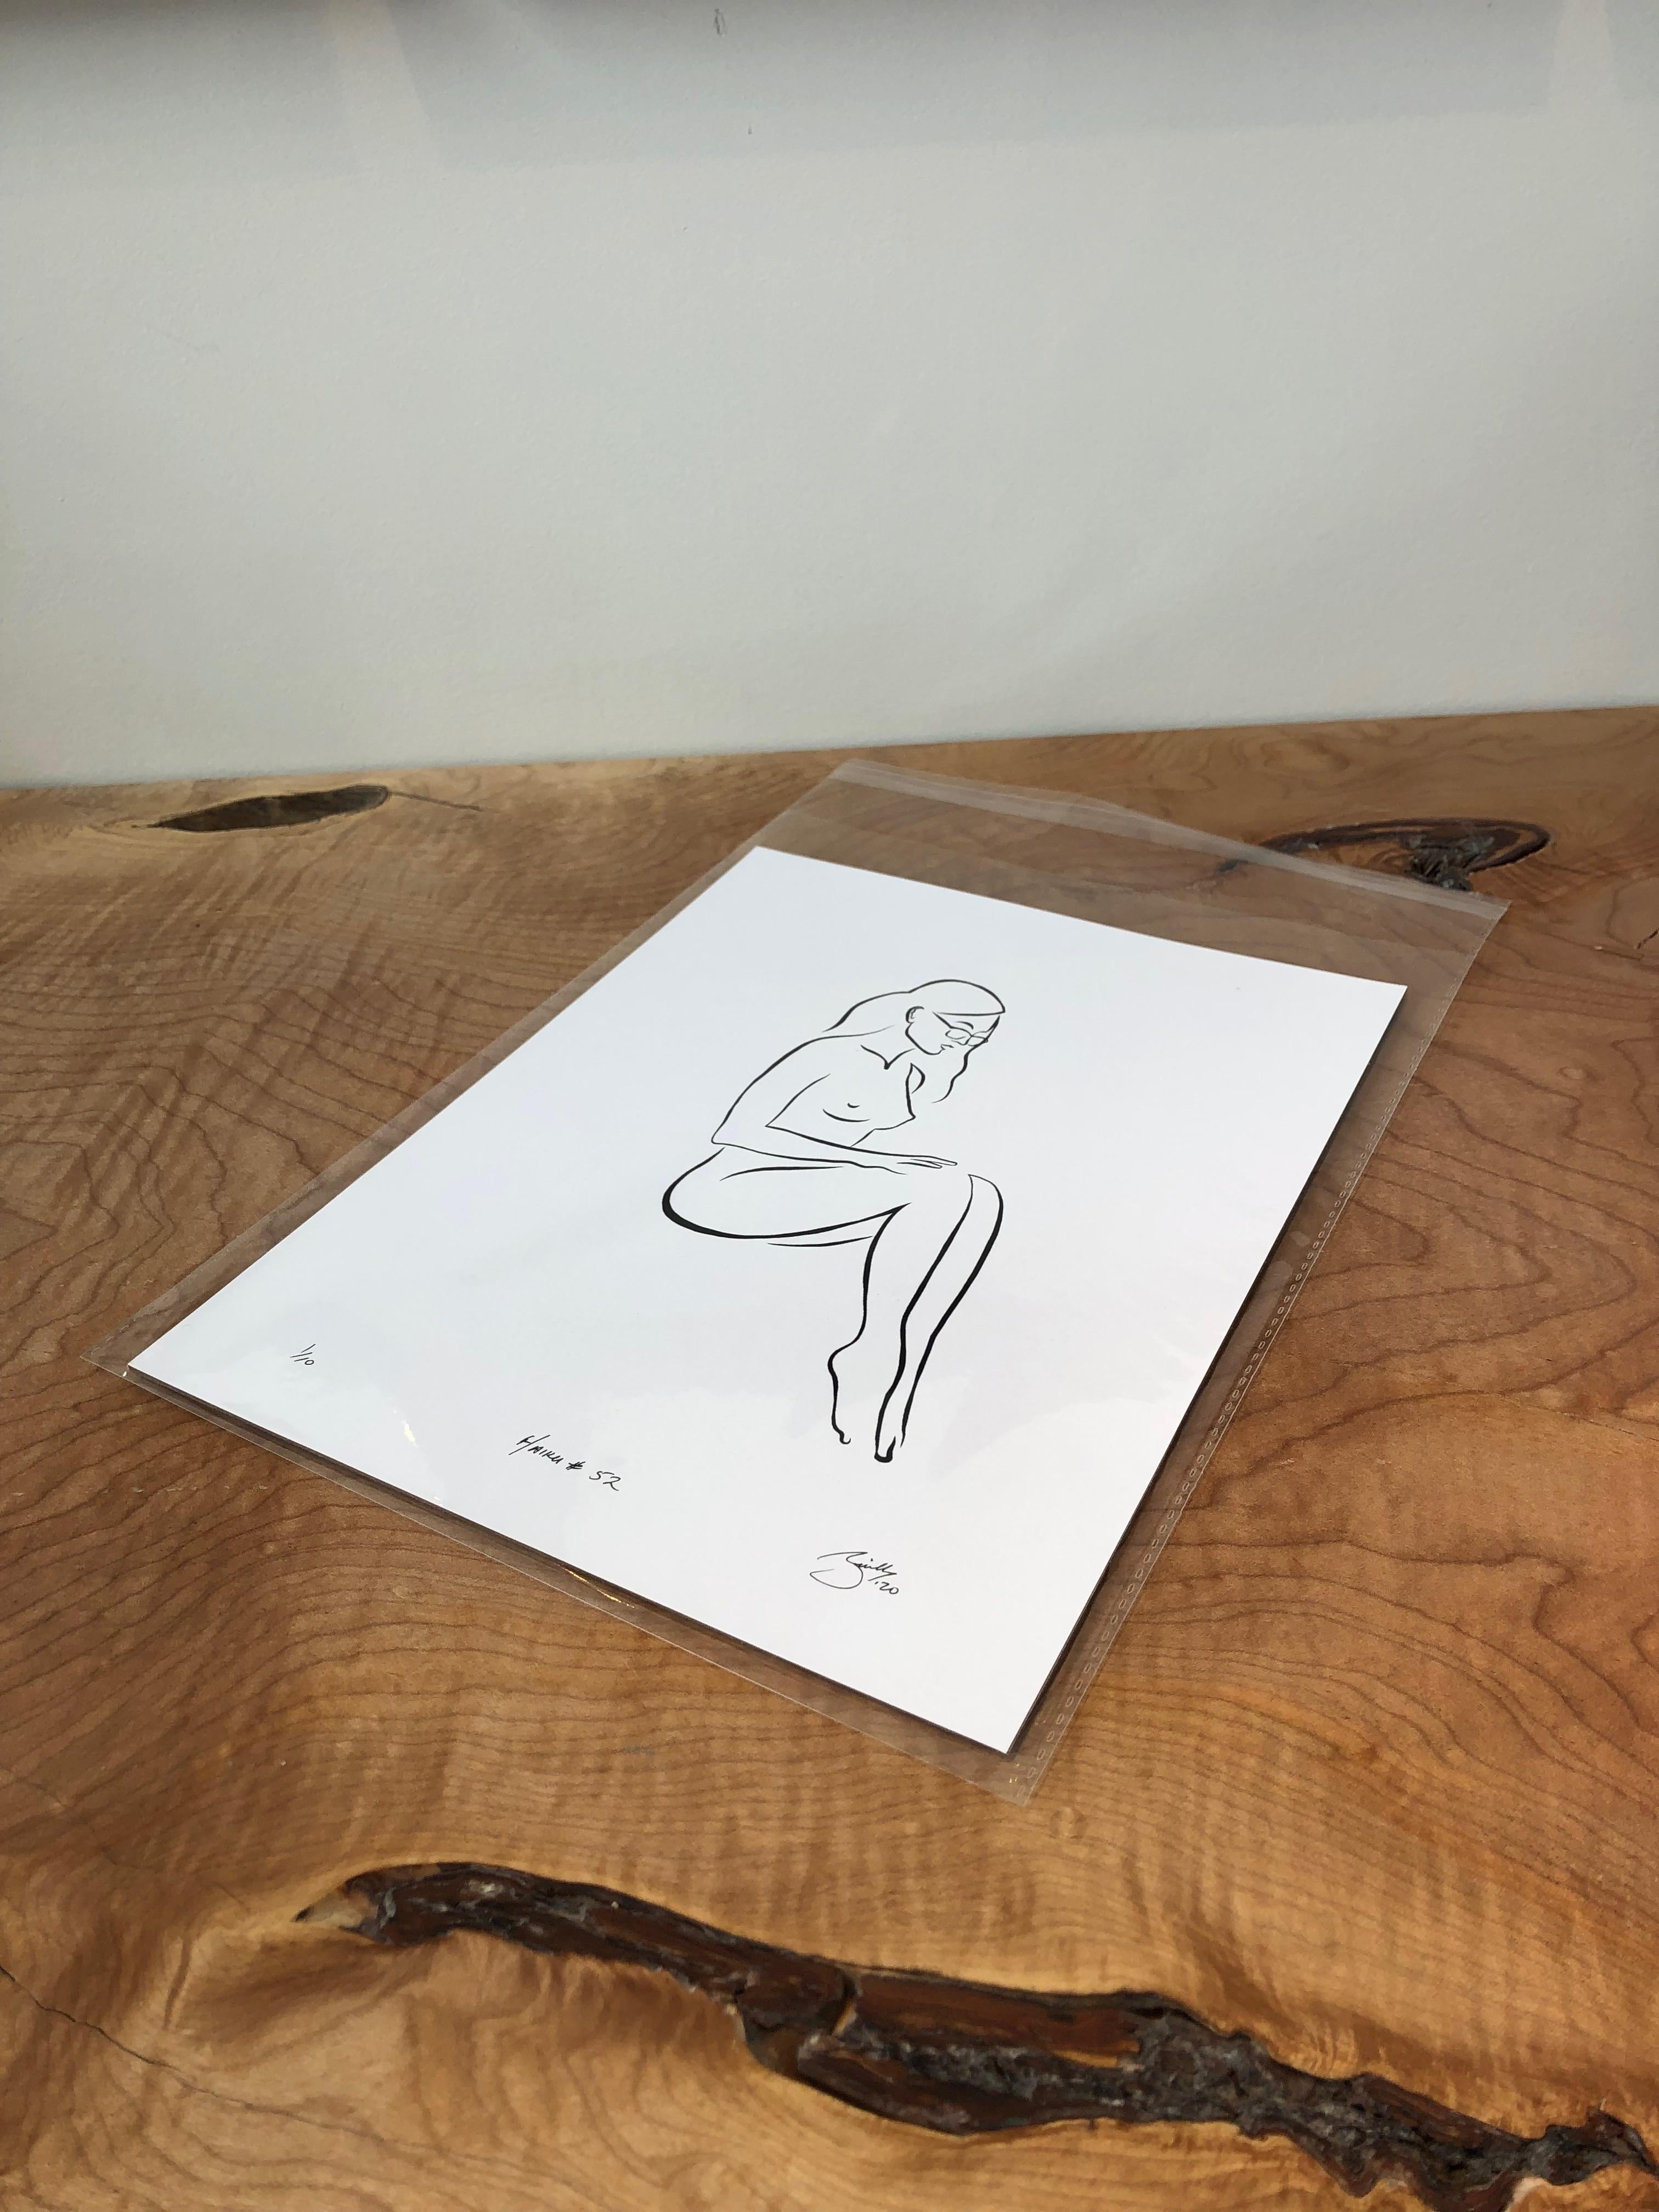 Haiku #52, 1/50 - Digital Vector Drawing Seated Female Nude Woman Figure Glasses - Print by Michael Binkley